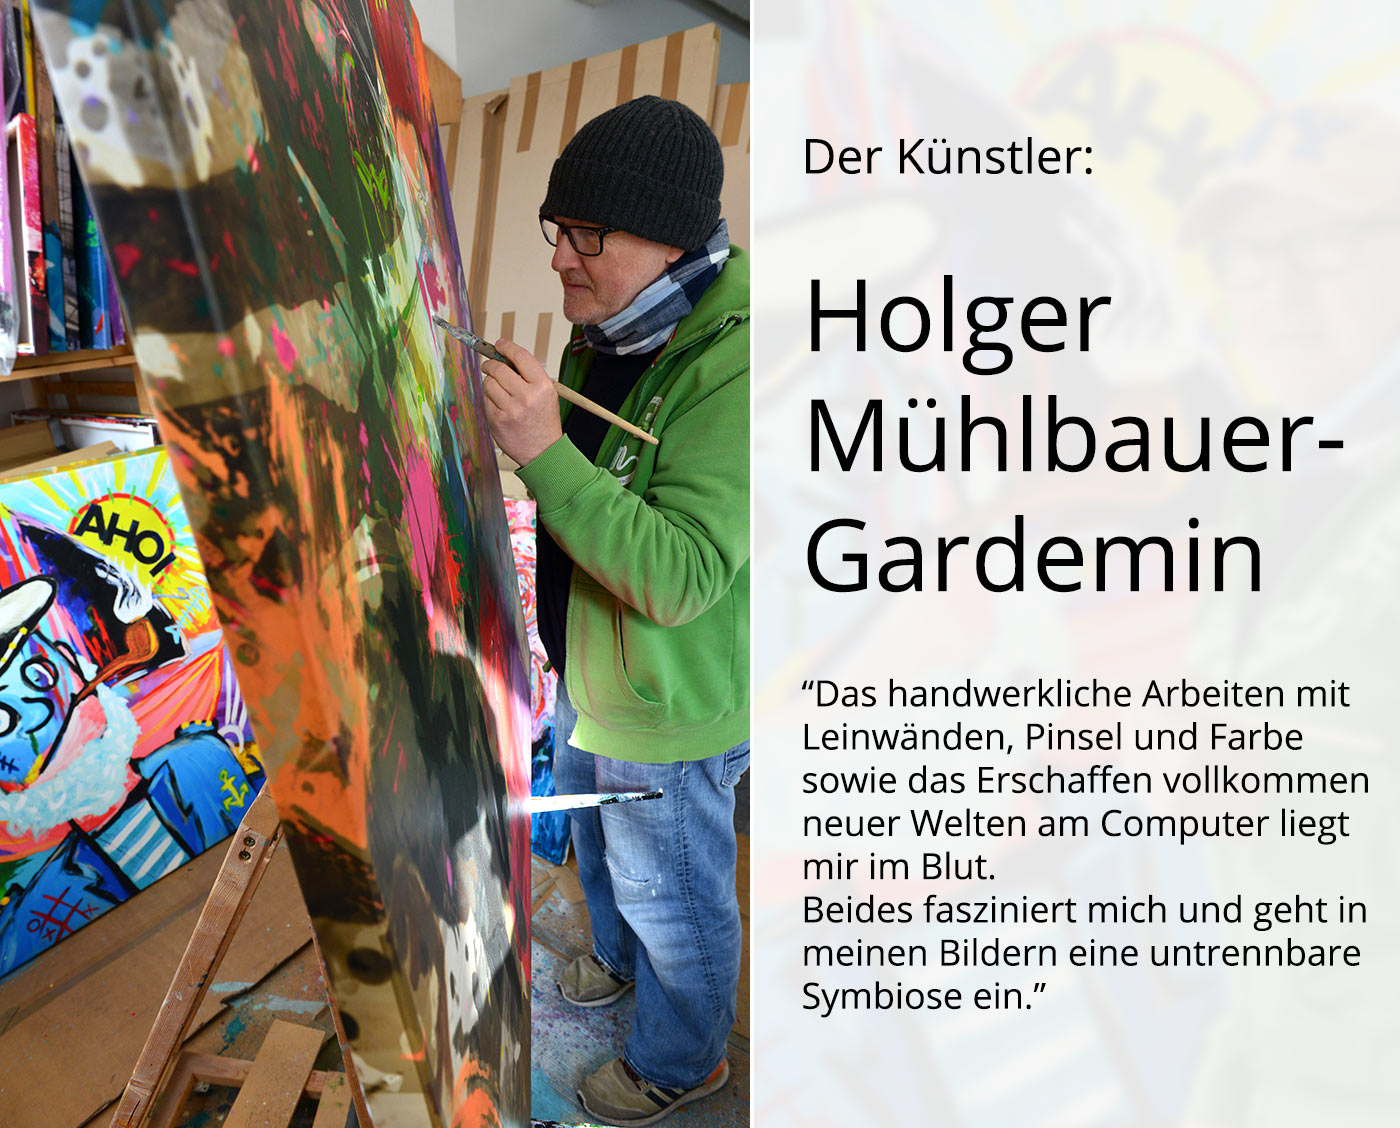 Kunstdruck, signiert: The Art to live, Holger Mühlbauer-Gardemin, Edition, Nr. 2/100